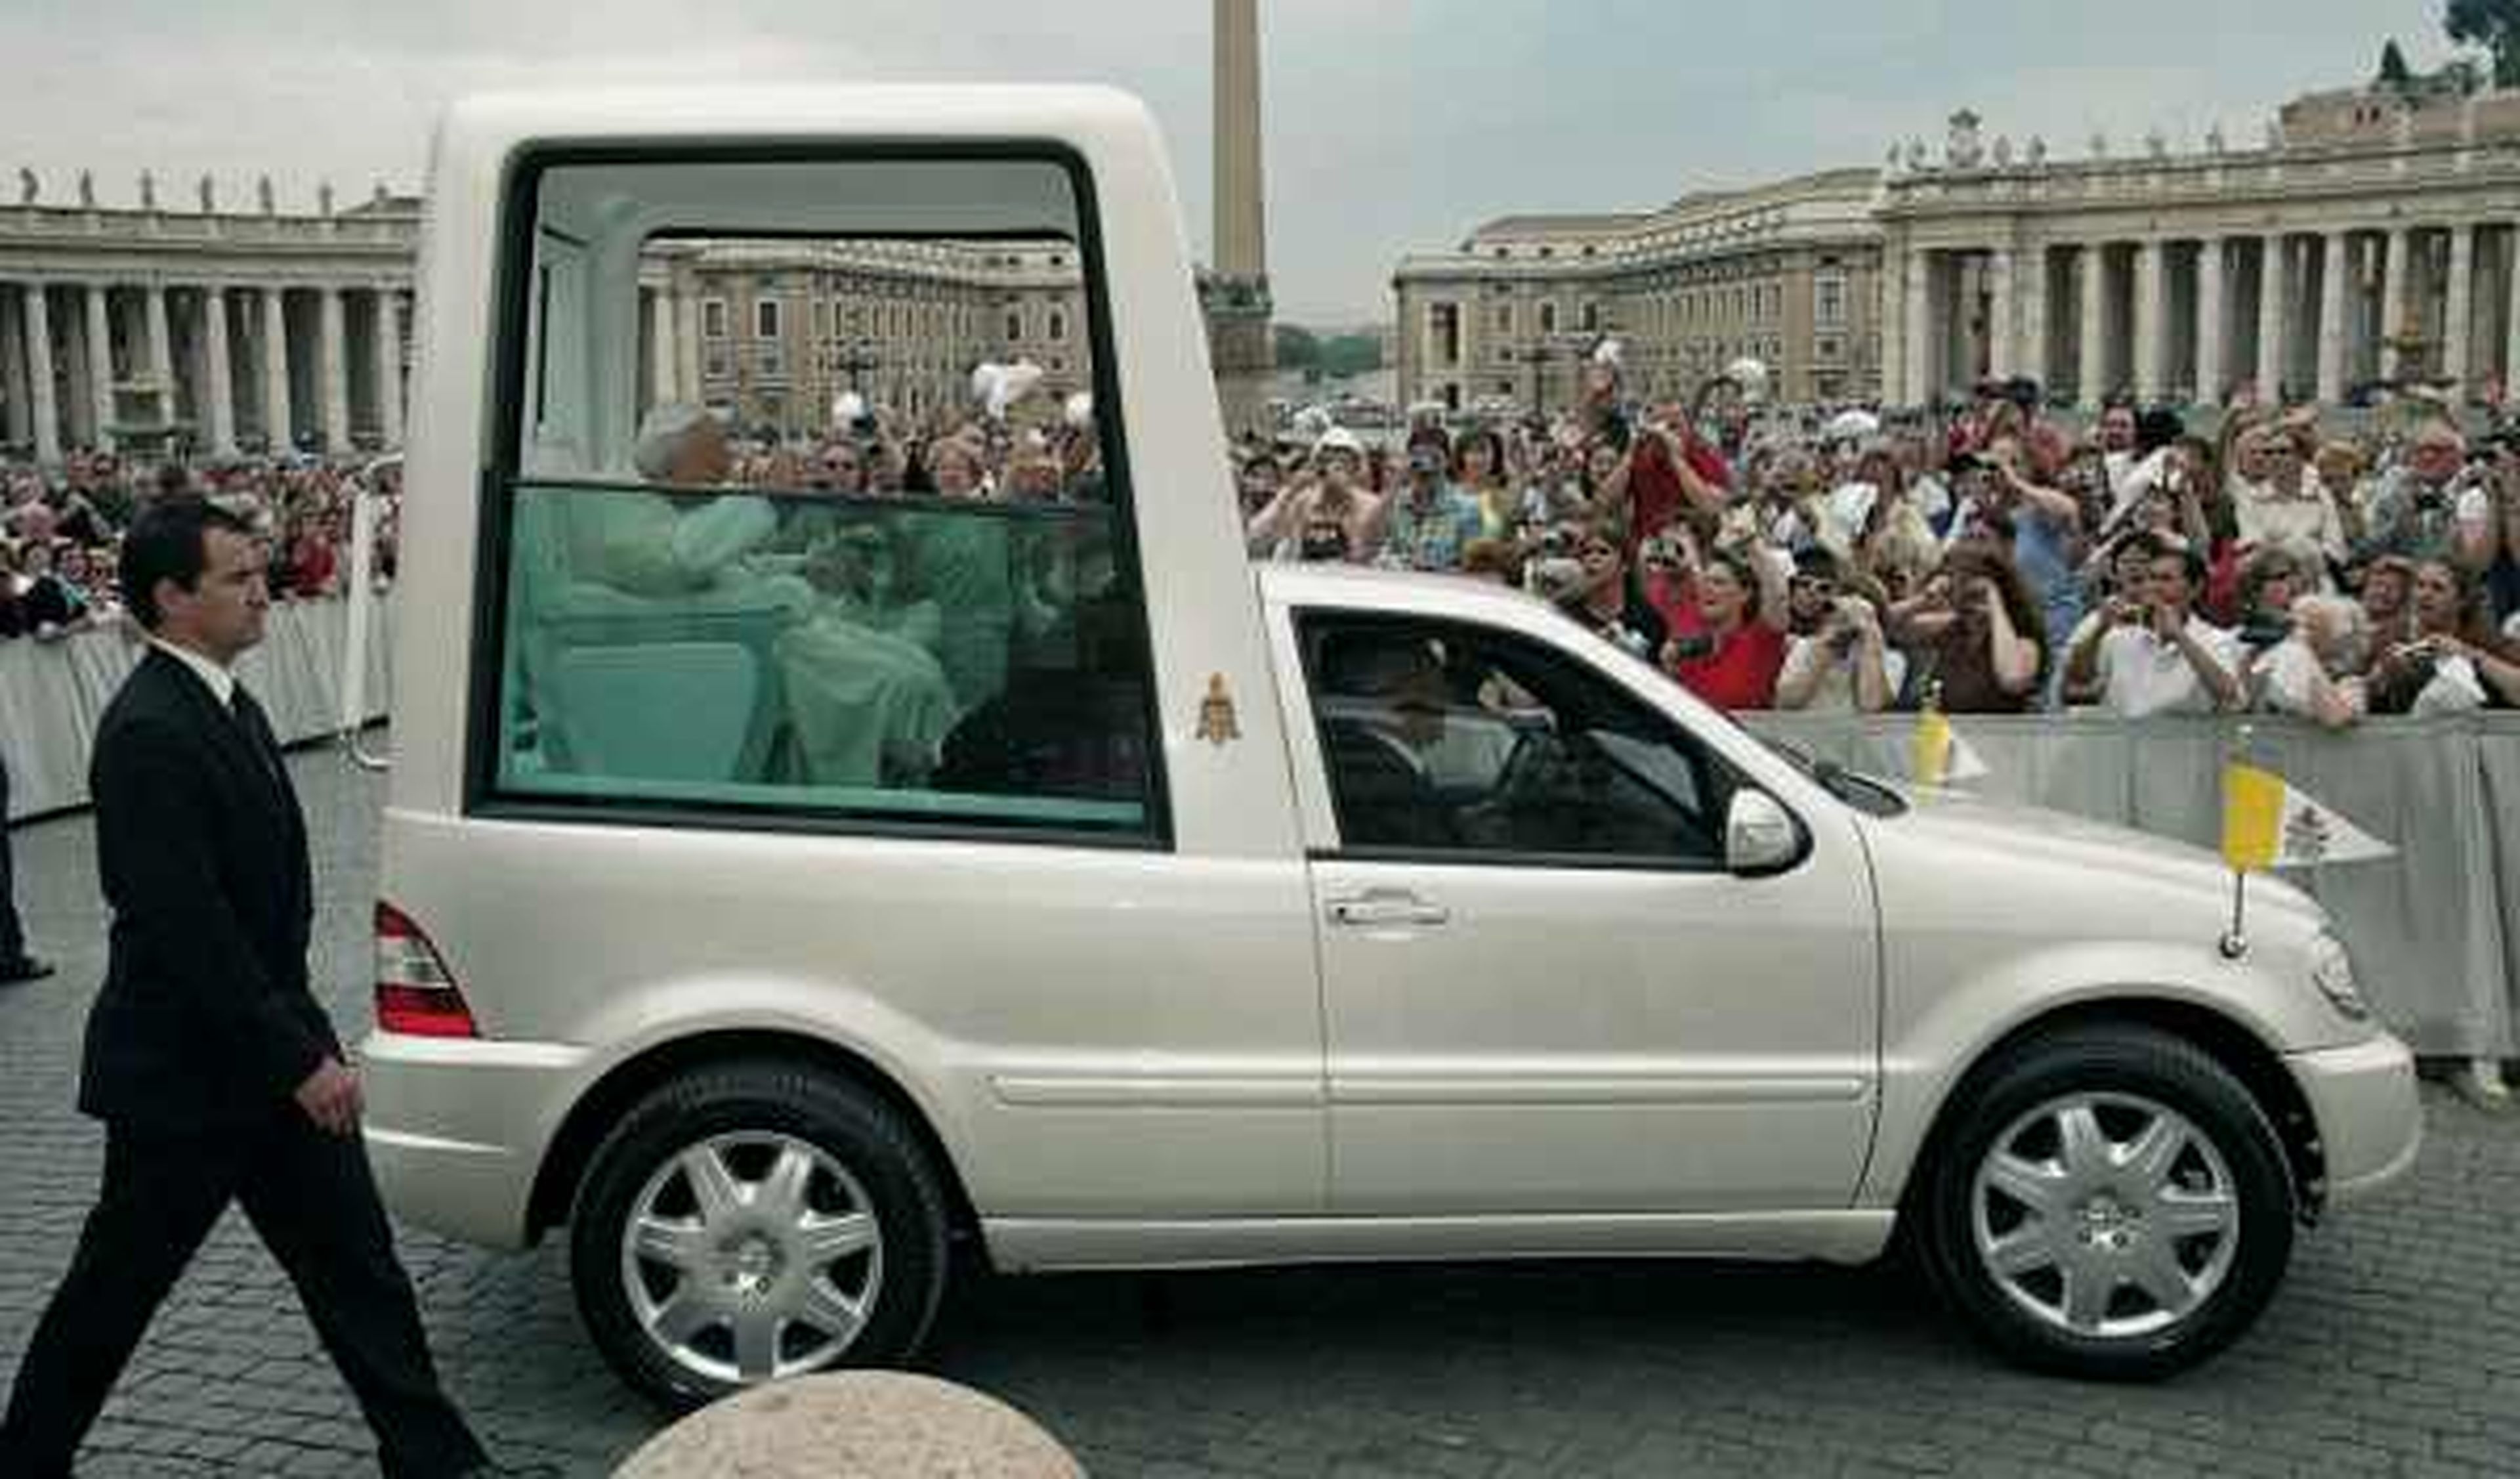 La visita del Papa causará cortes de tráfico